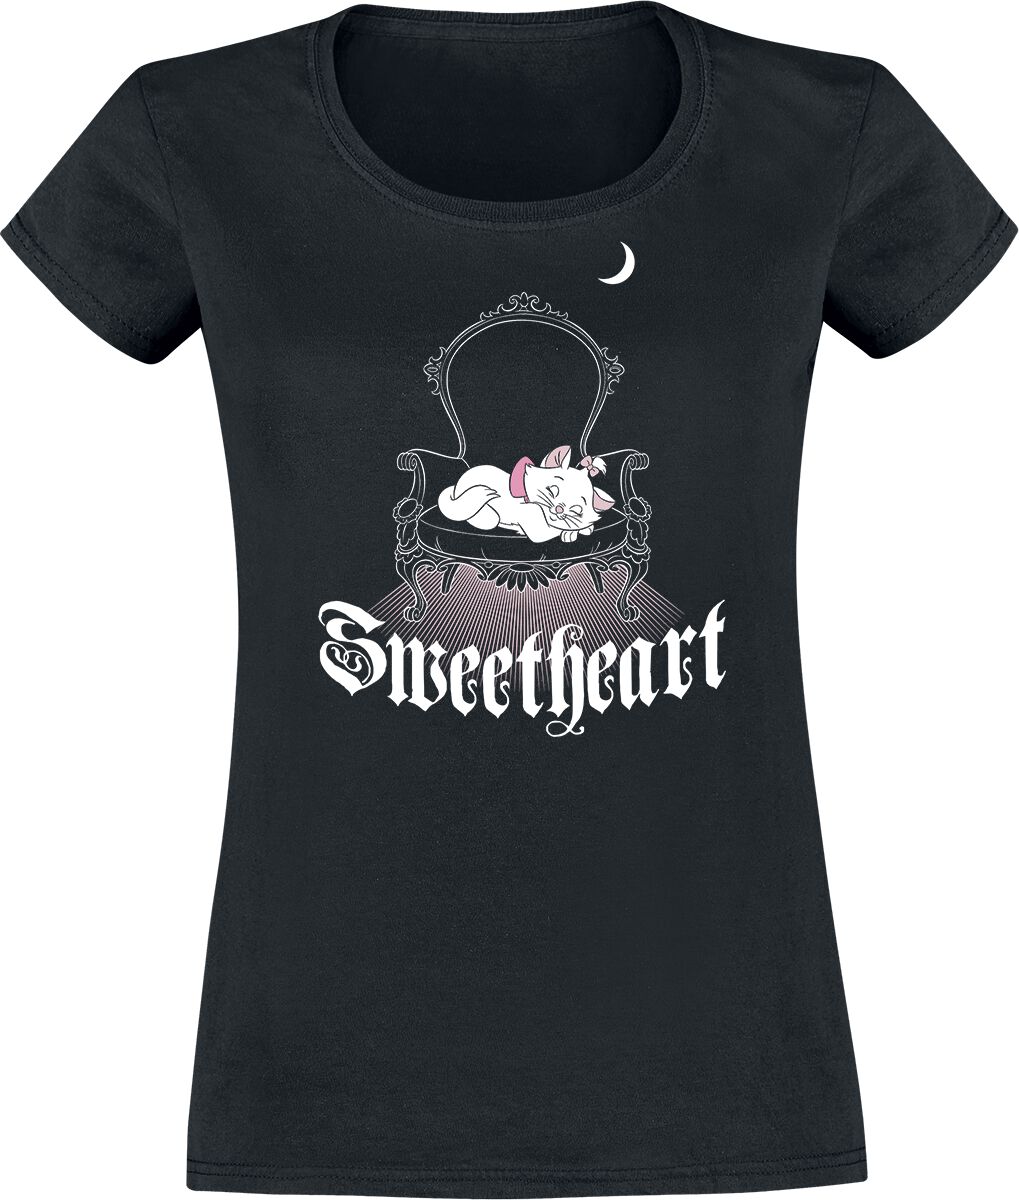 T-Shirt Manches courtes Disney de Les Aristochats - Sweetheart - S à XL - pour Femme - noir